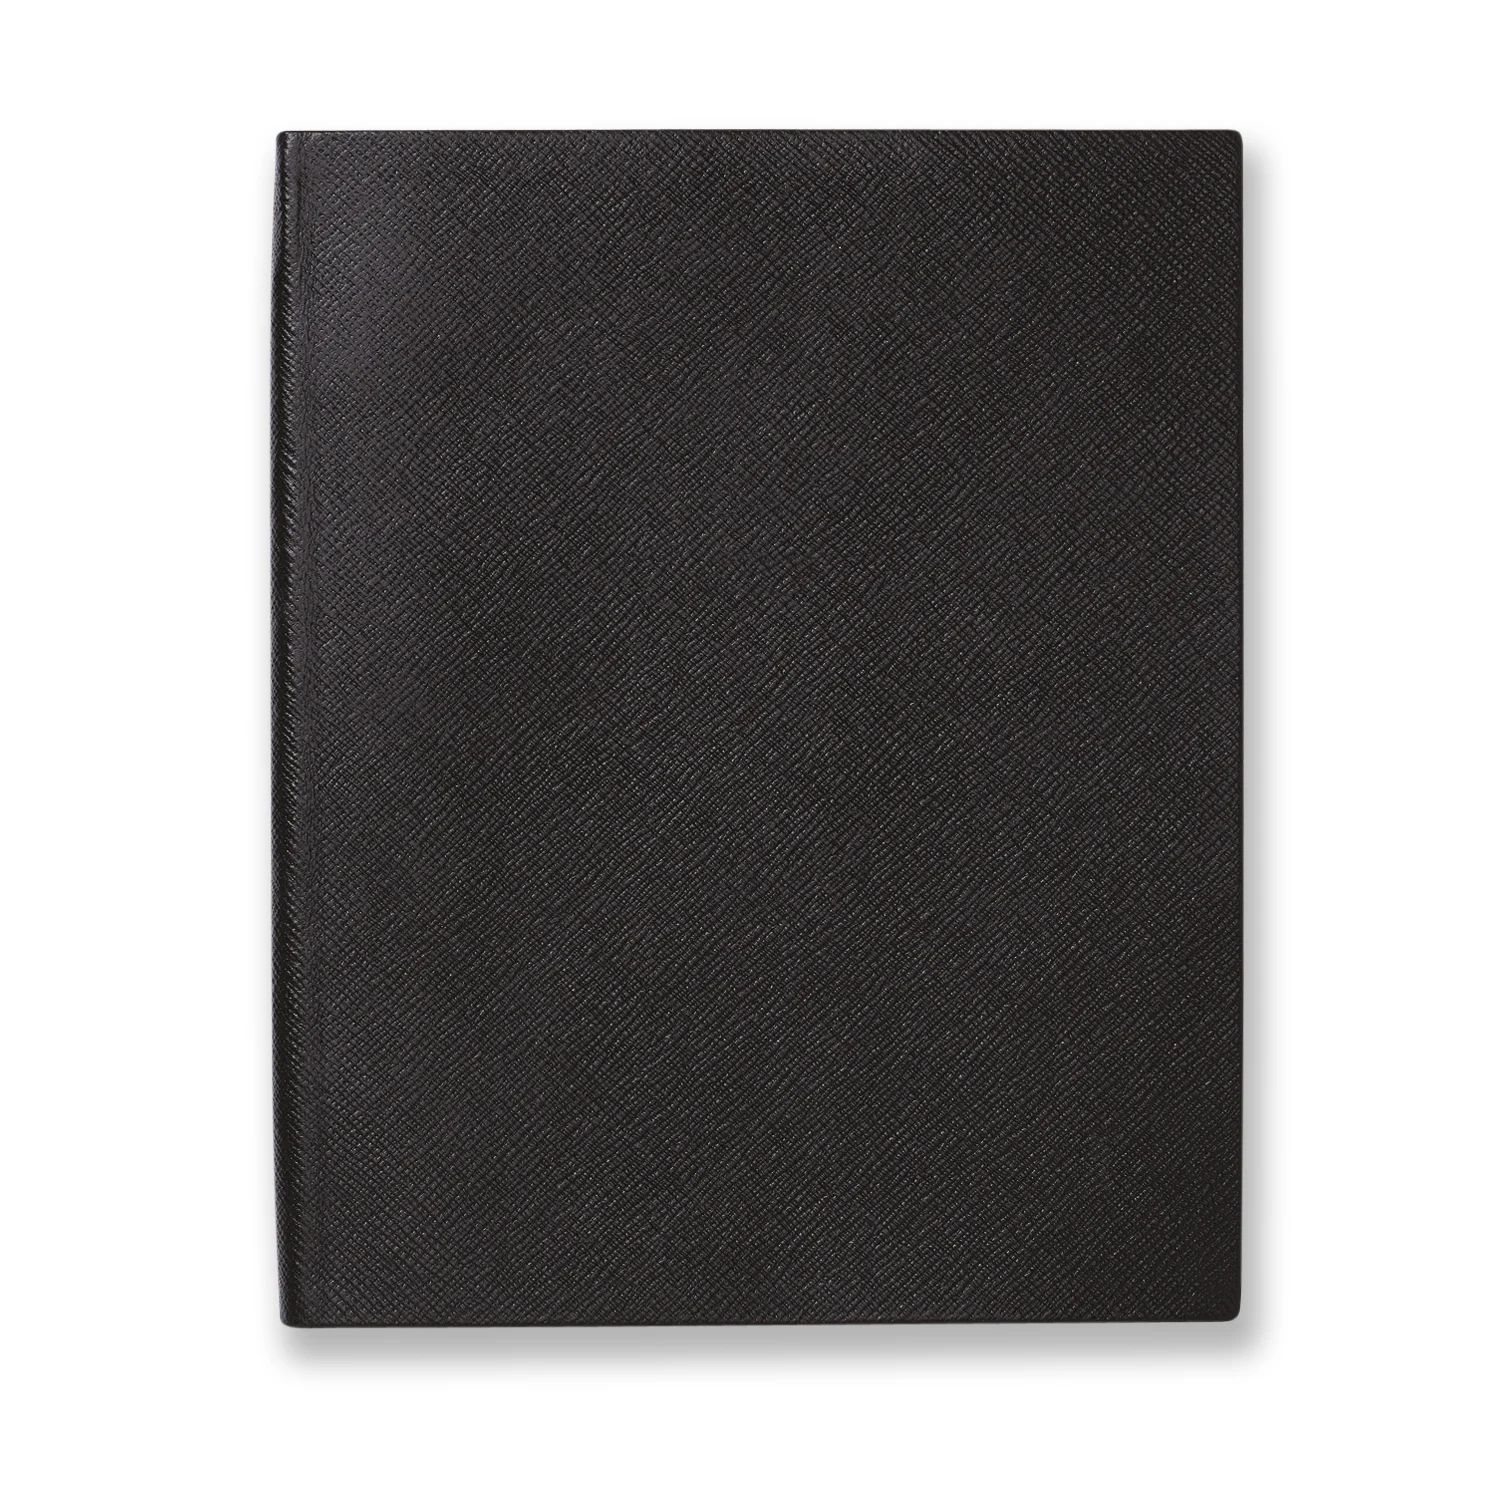 Portobello Notebook in Panama in black | Smythson | Smythson